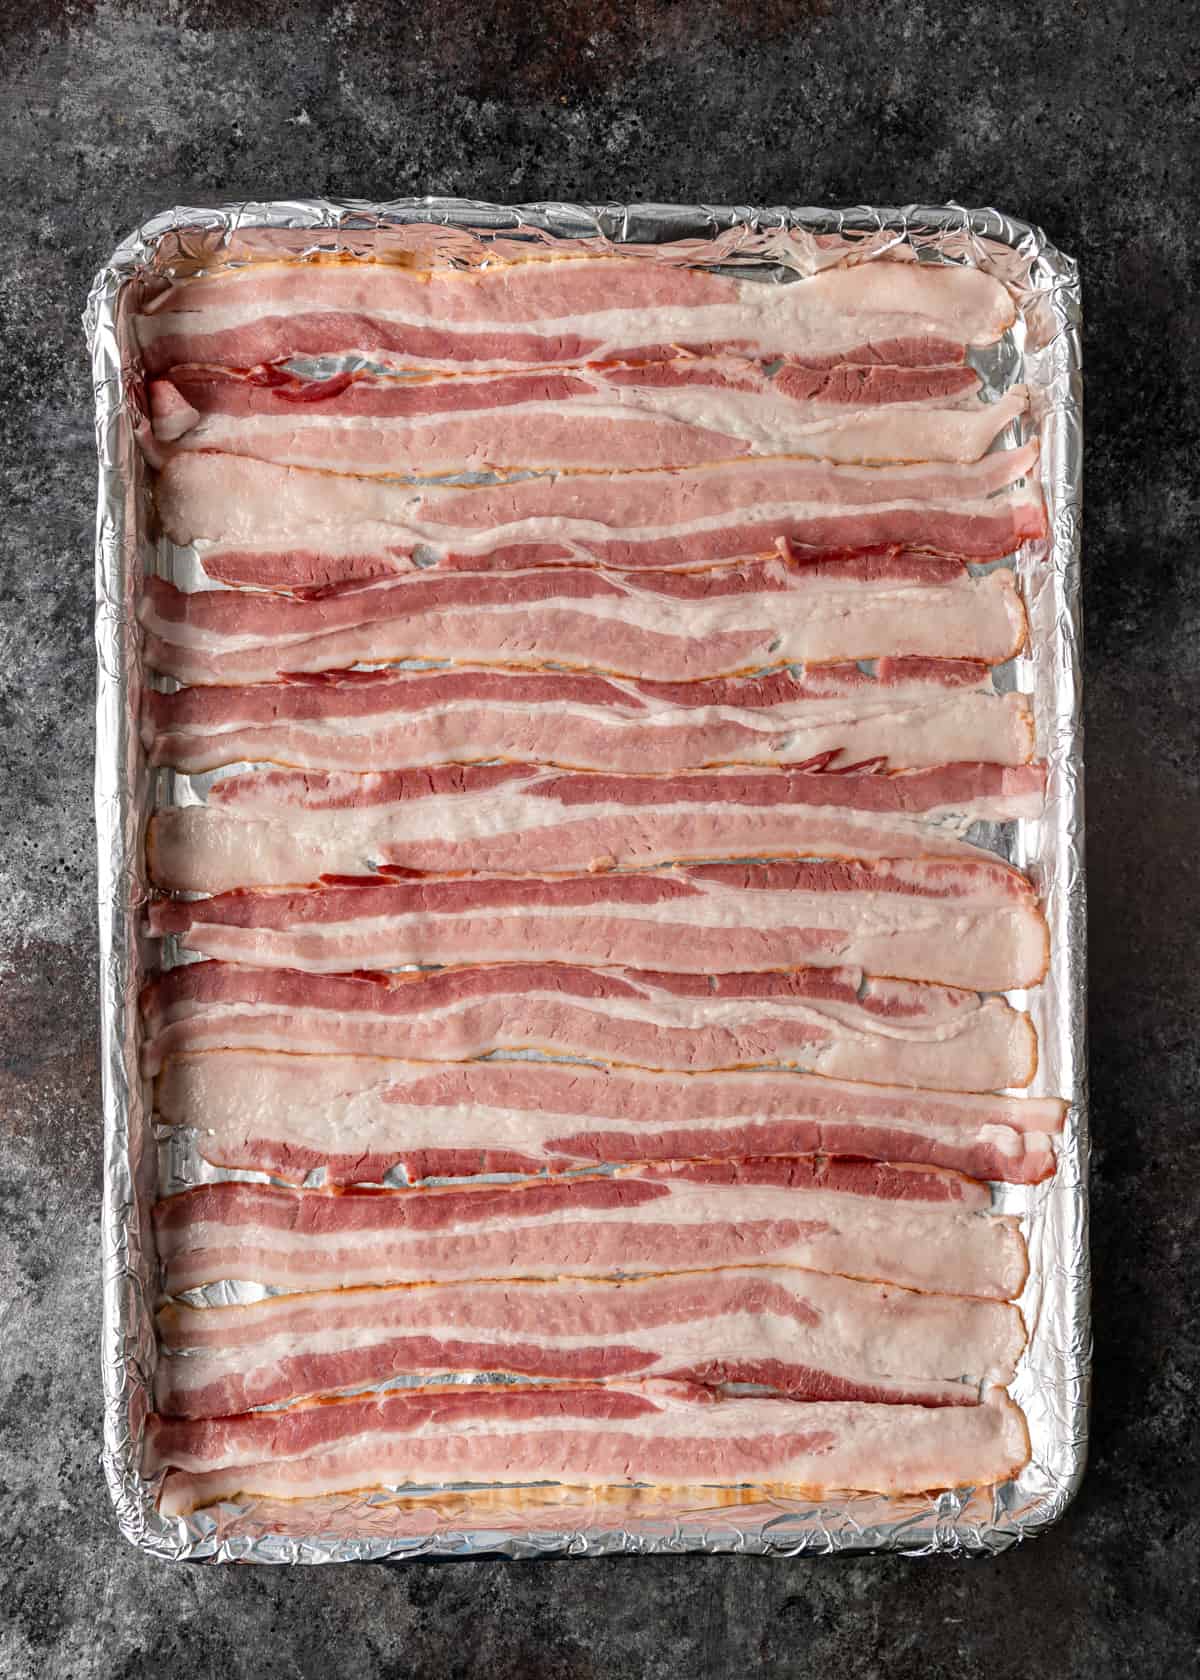 pre-baking bacon on a baking sheet